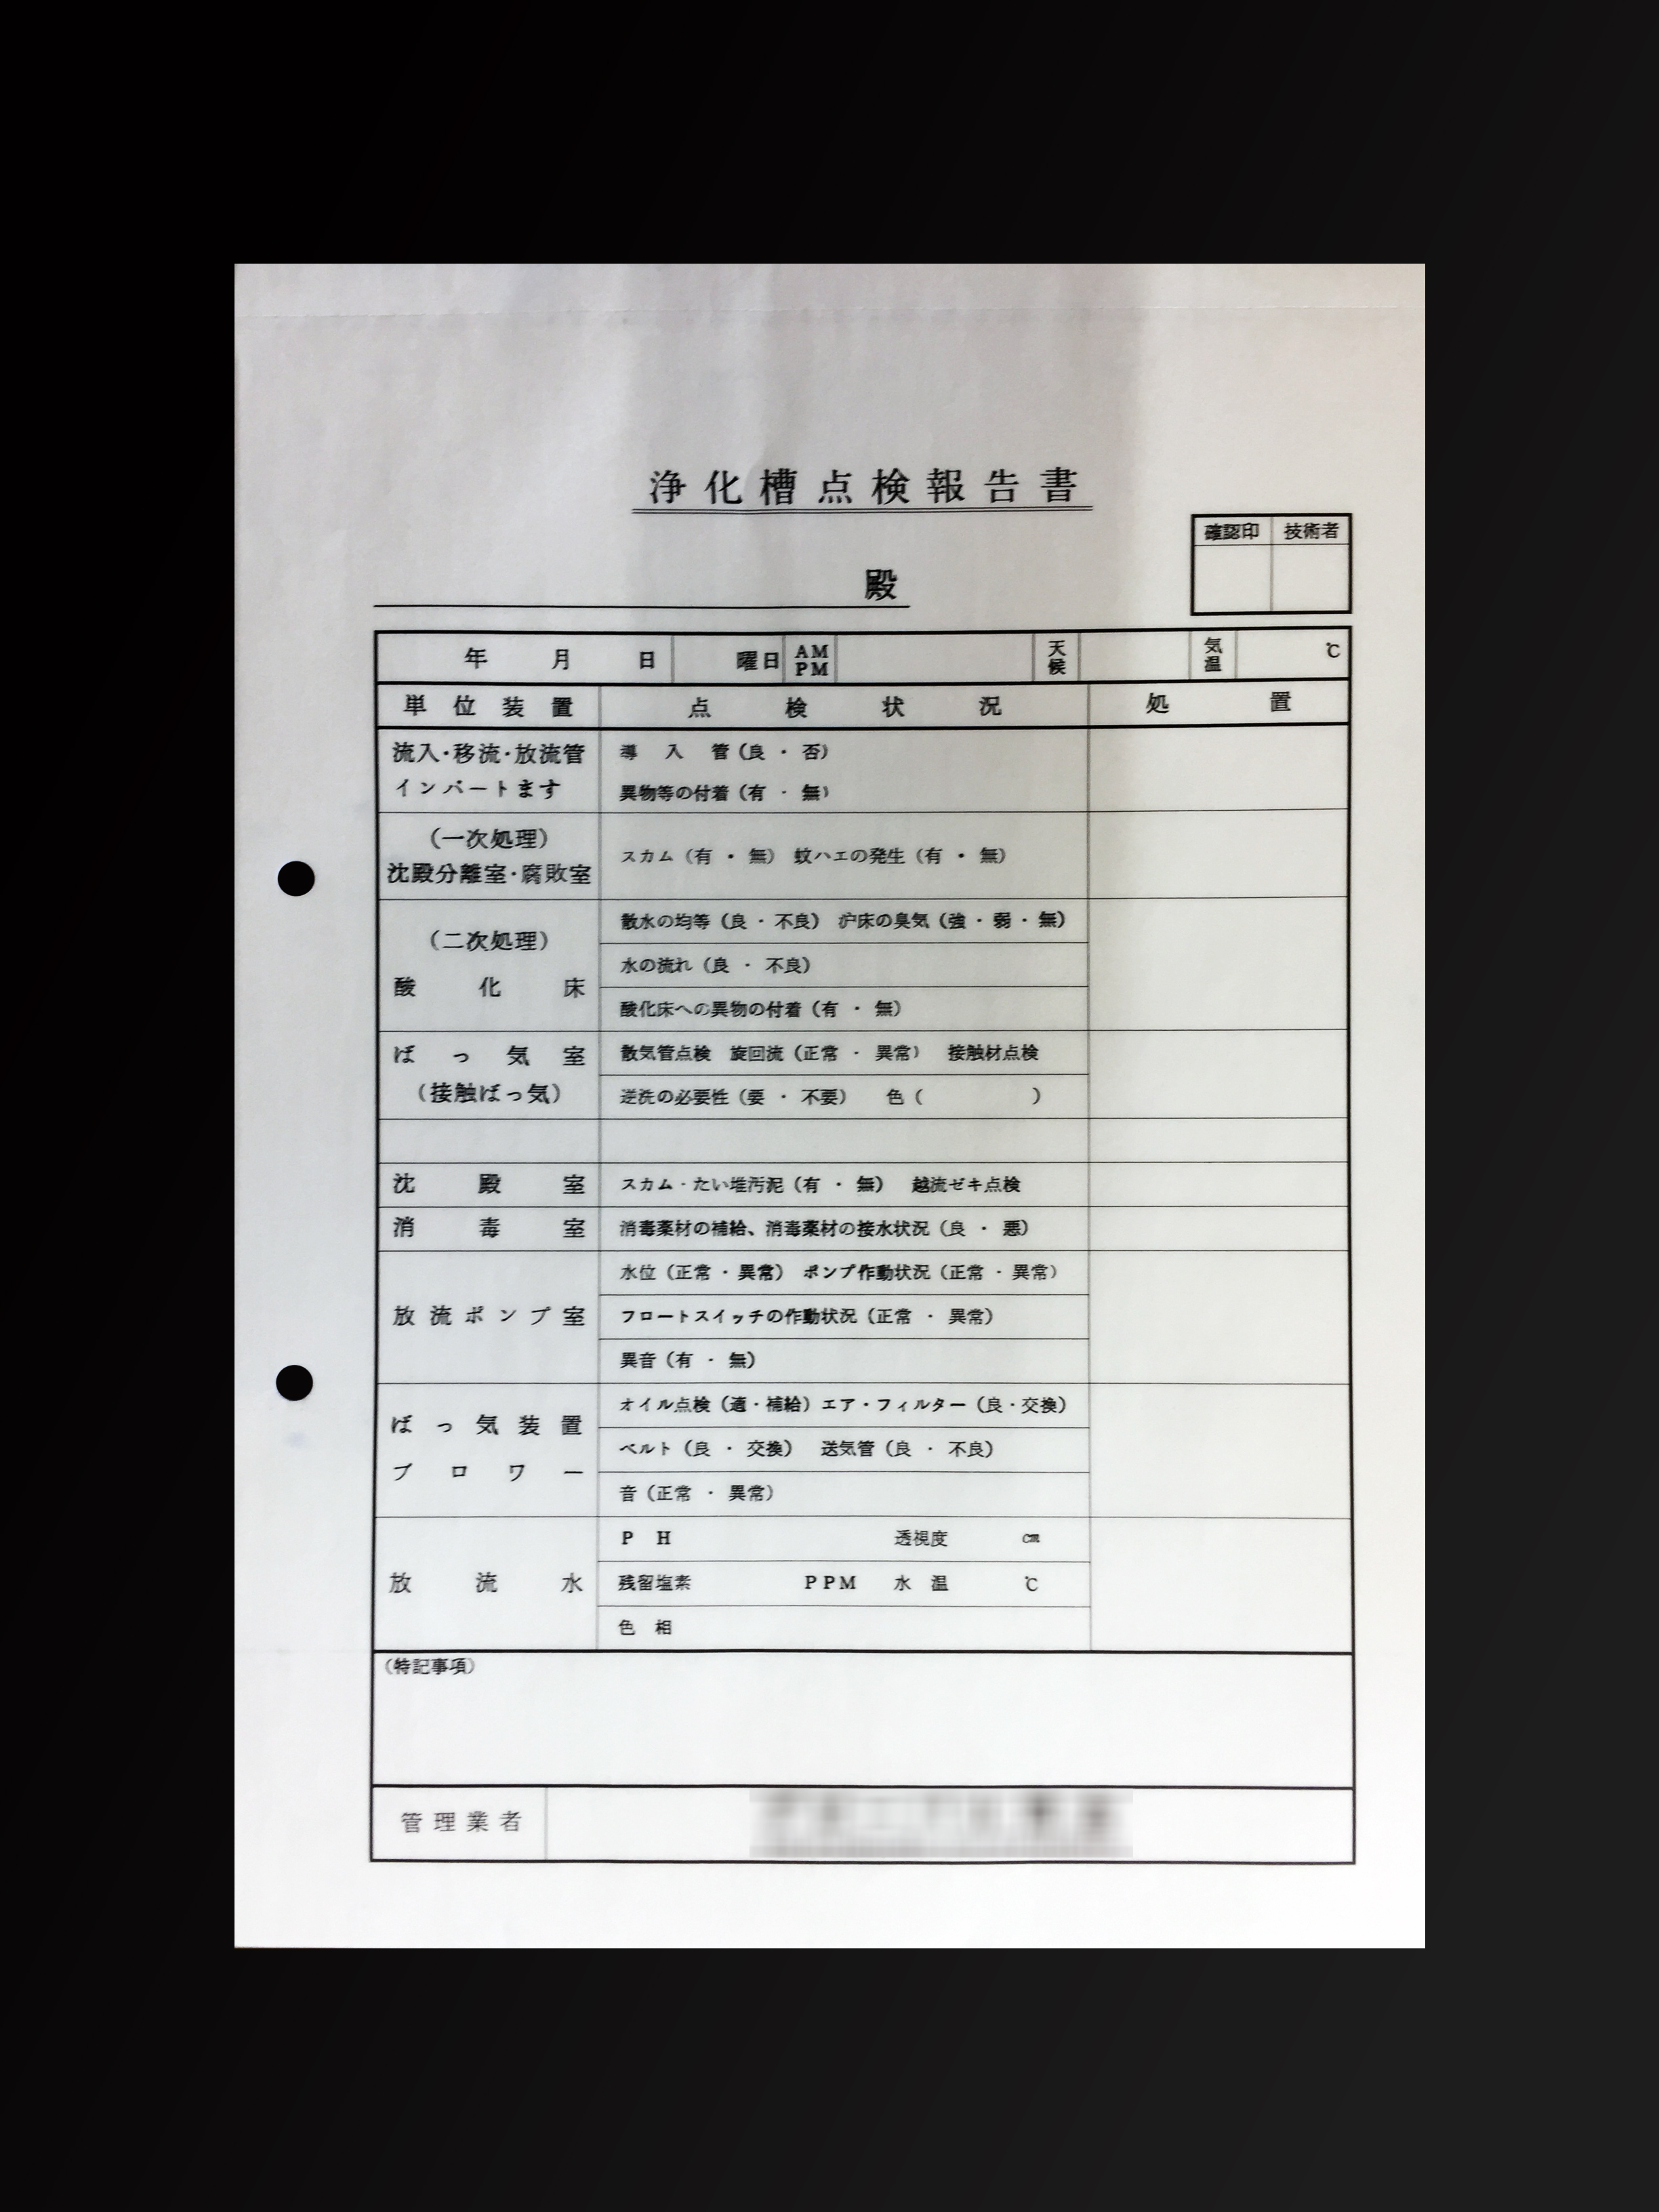 施工業で使用する浄化槽点検報告書(2枚複写)の伝票作成実績